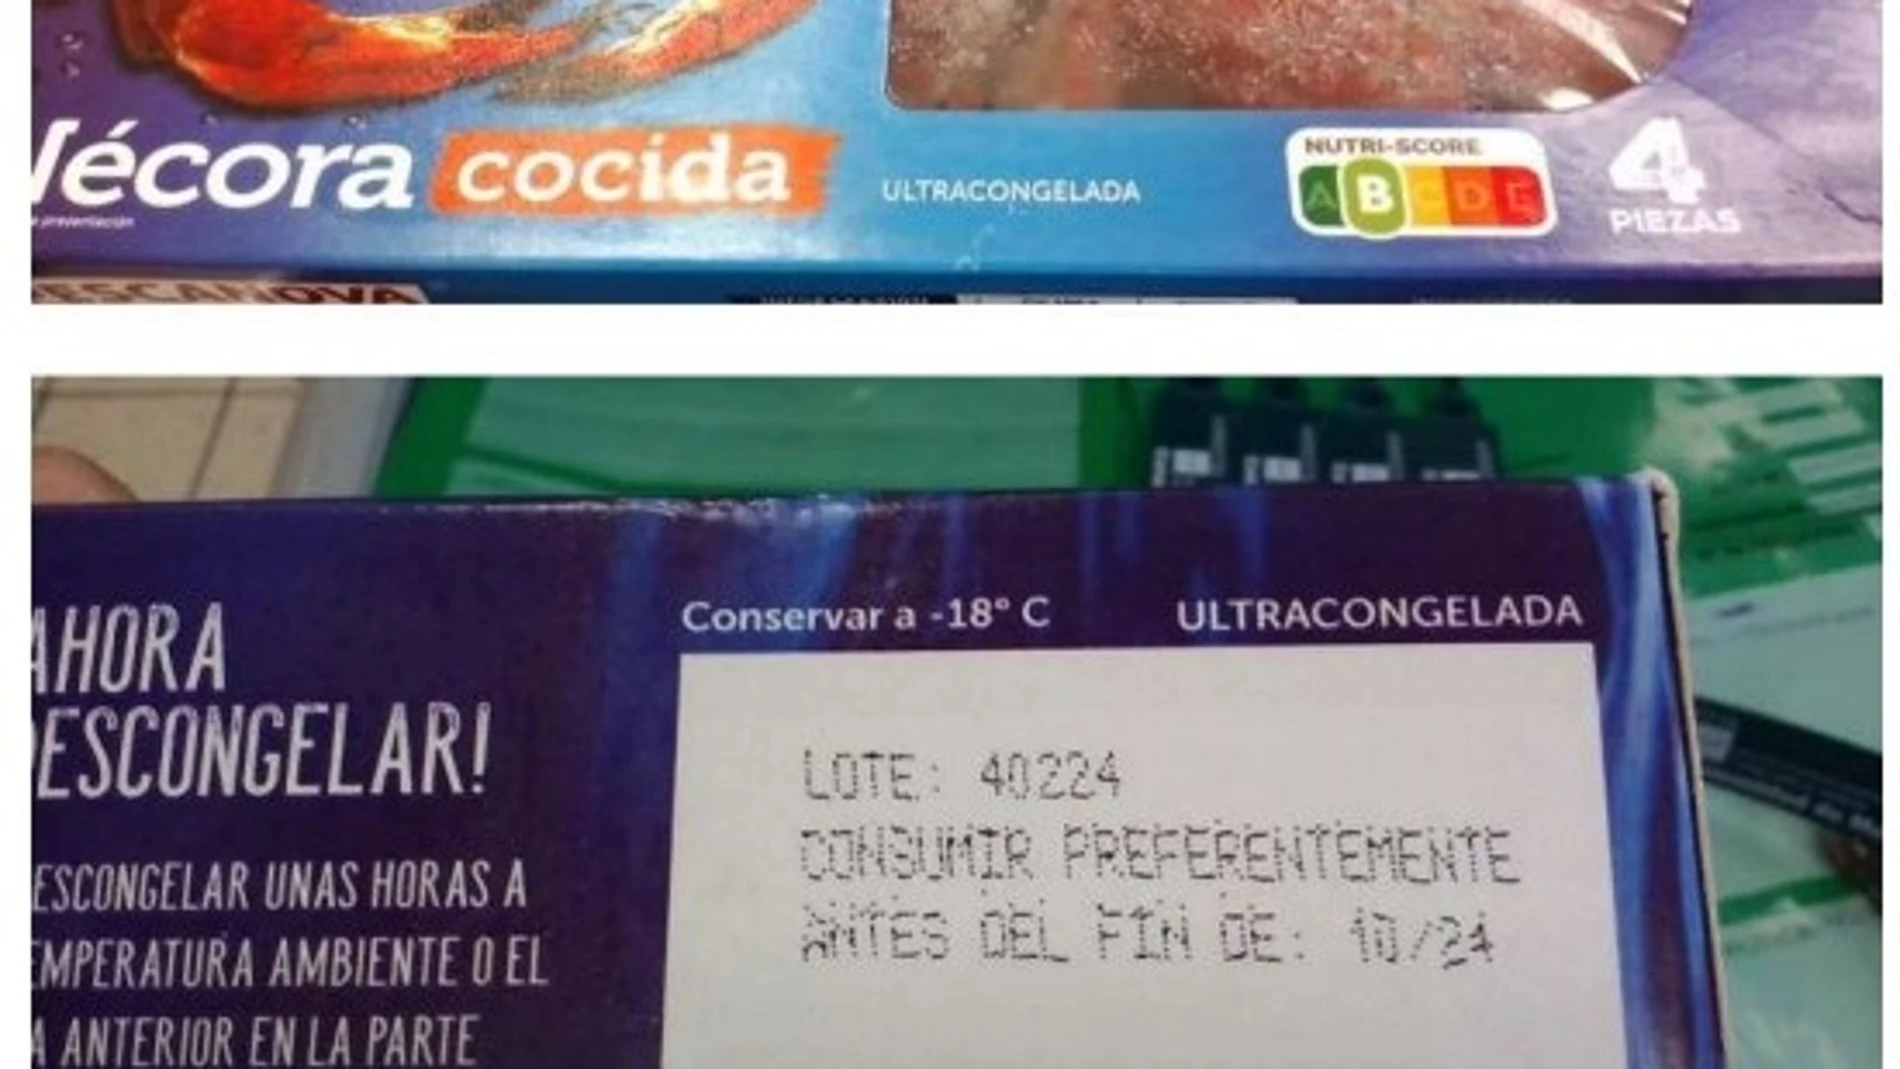 MADRID.-Consumo alerta de presencia de 'Salmonella' en un lote de nécoras cocidas congeladas de la marca Pescanova